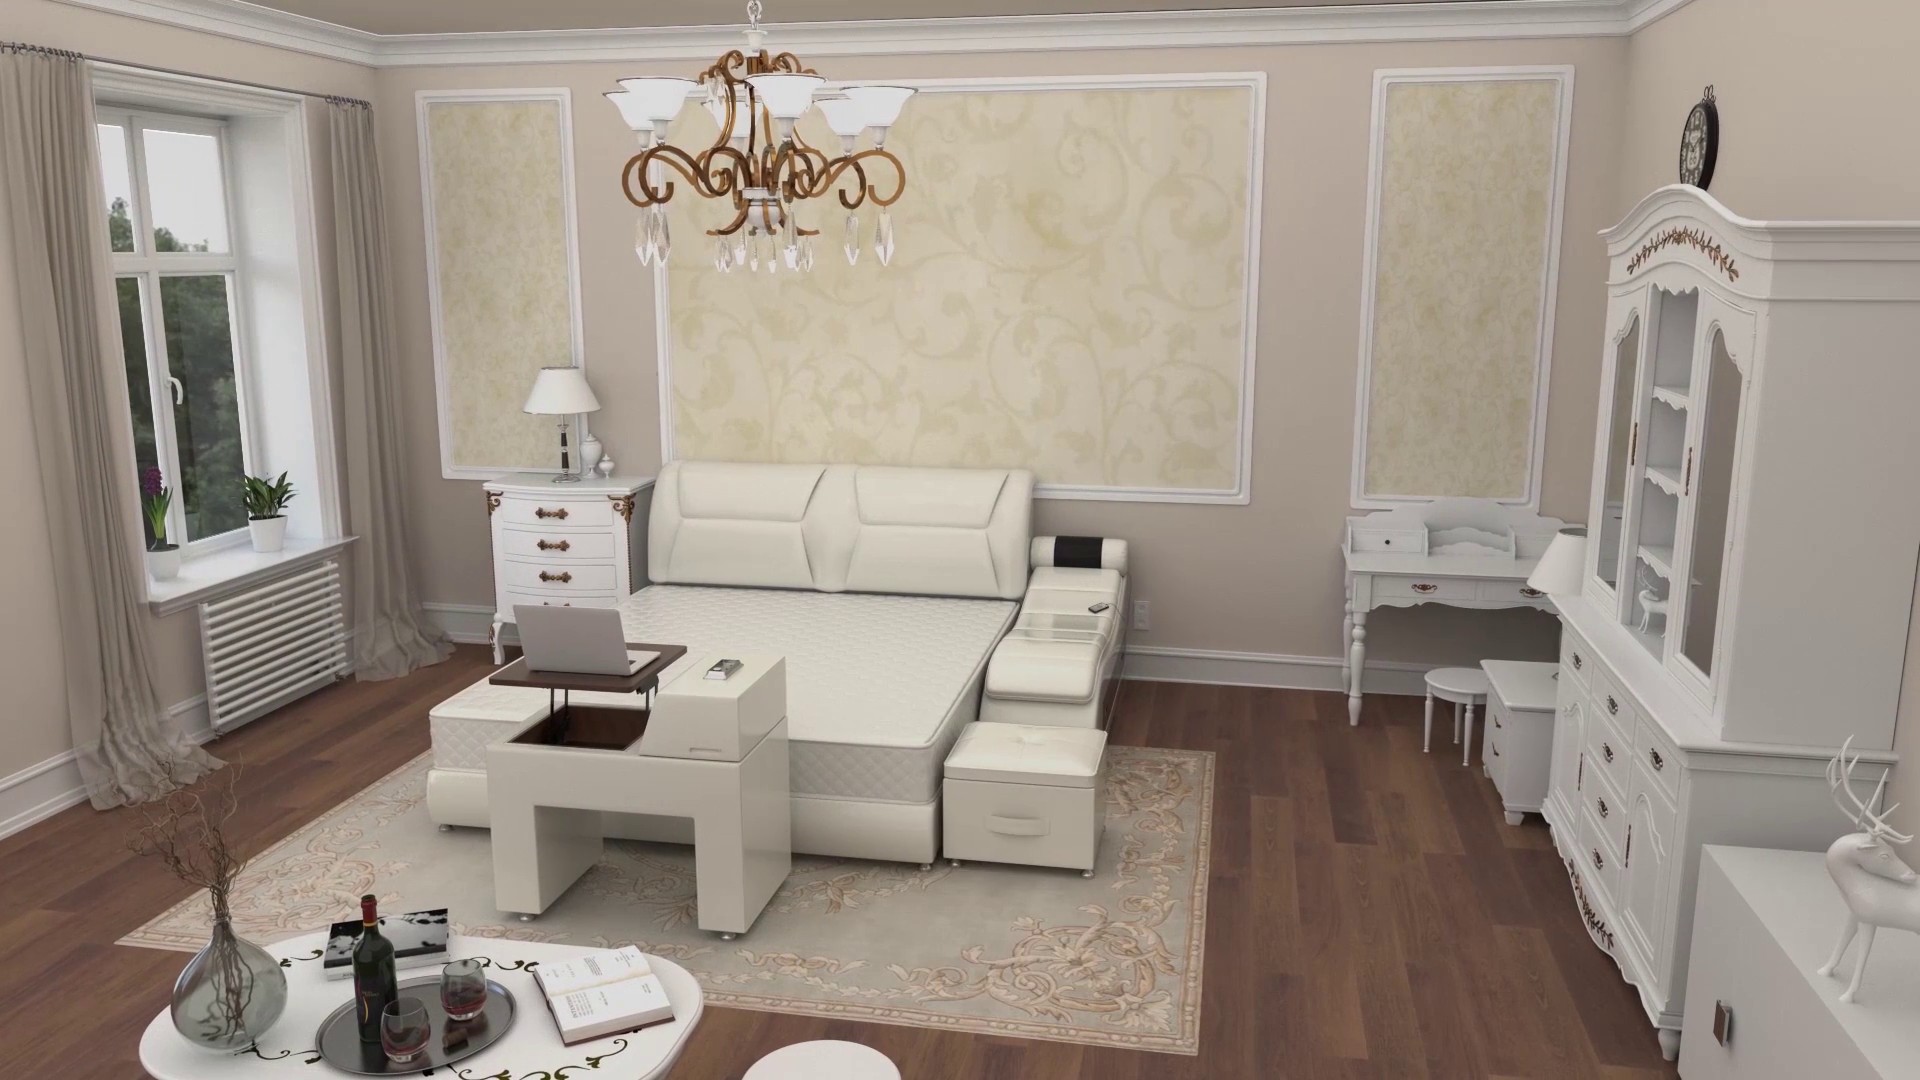 三维动画技术在家具产品设计中的优势和应用